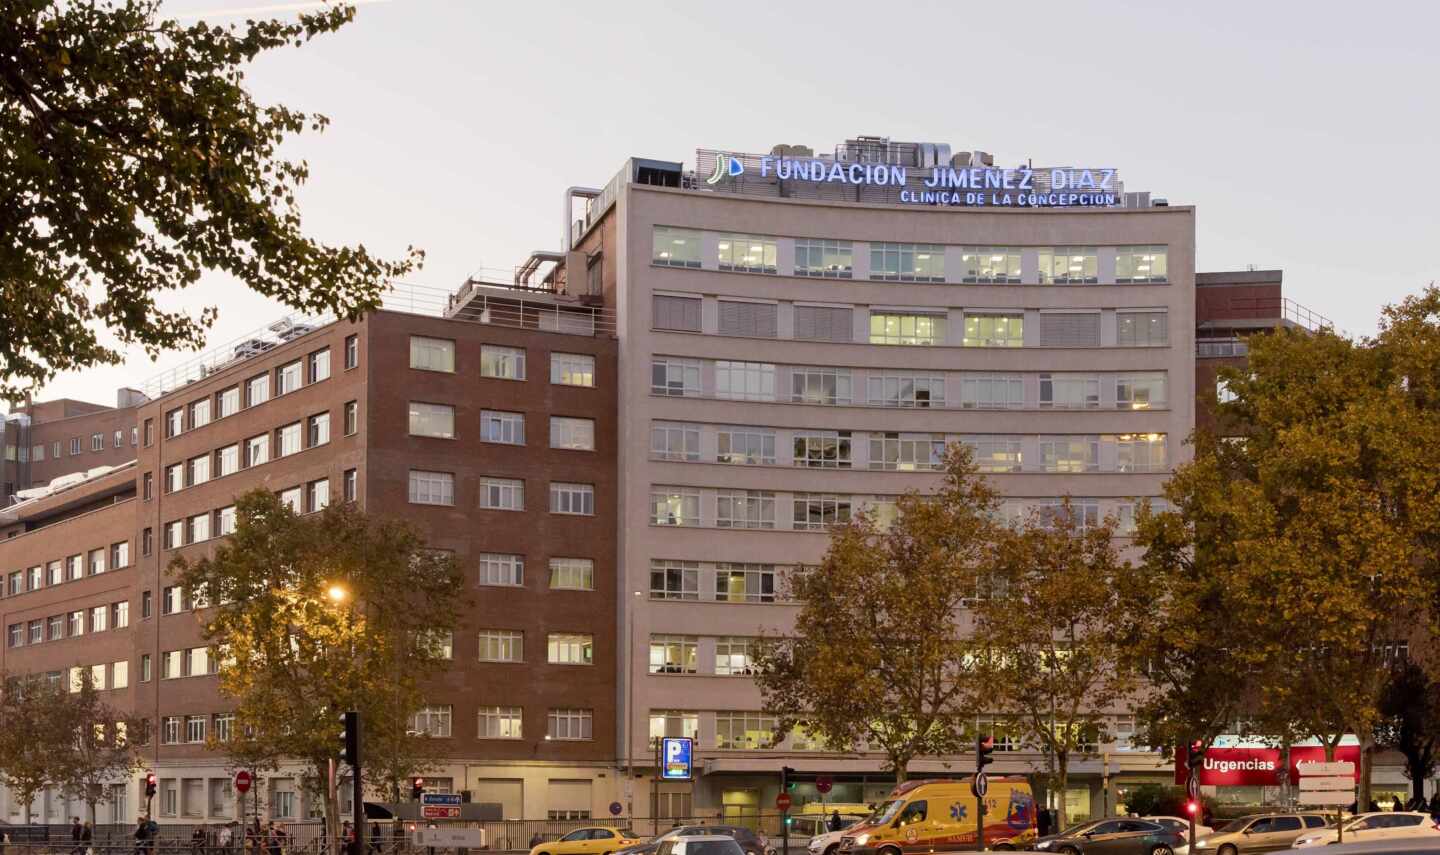 La Fundación Jiménez Diaz, mejor hospital de España según el IEH 2019 del Instituto de Coordenadas